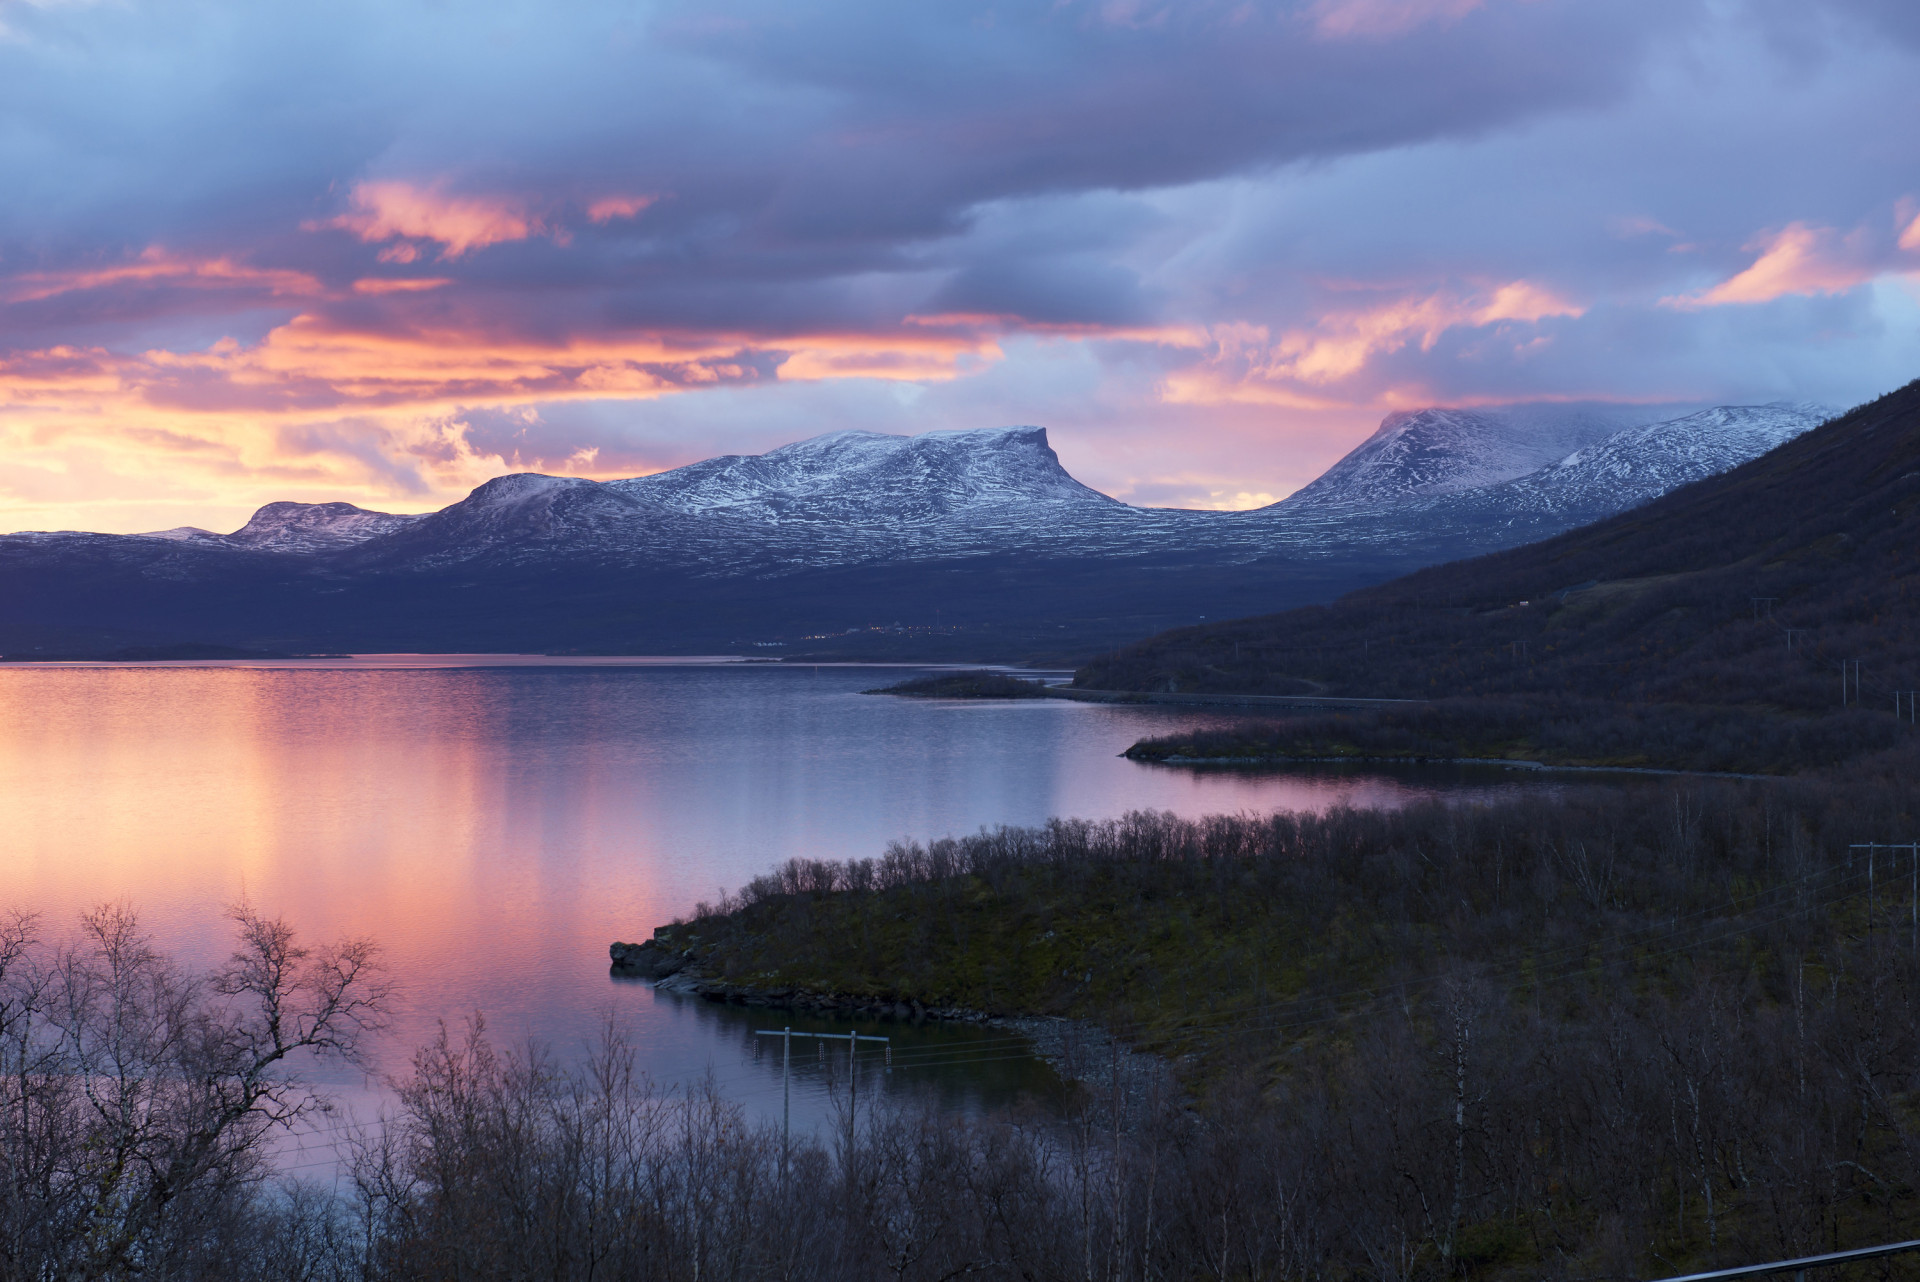 Parmi tous les fjords norvégiens, le Geirangerfjord, avec ses 15 km de long, est l'un des plus impressionnants.<p>Tu pourrais aussi aimer:<a href="https://www.starsinsider.com/n/417988?utm_source=msn.com&utm_medium=display&utm_campaign=referral_description&utm_content=164633v1"> Ces vallées vont vous couper le souffle</a></p>